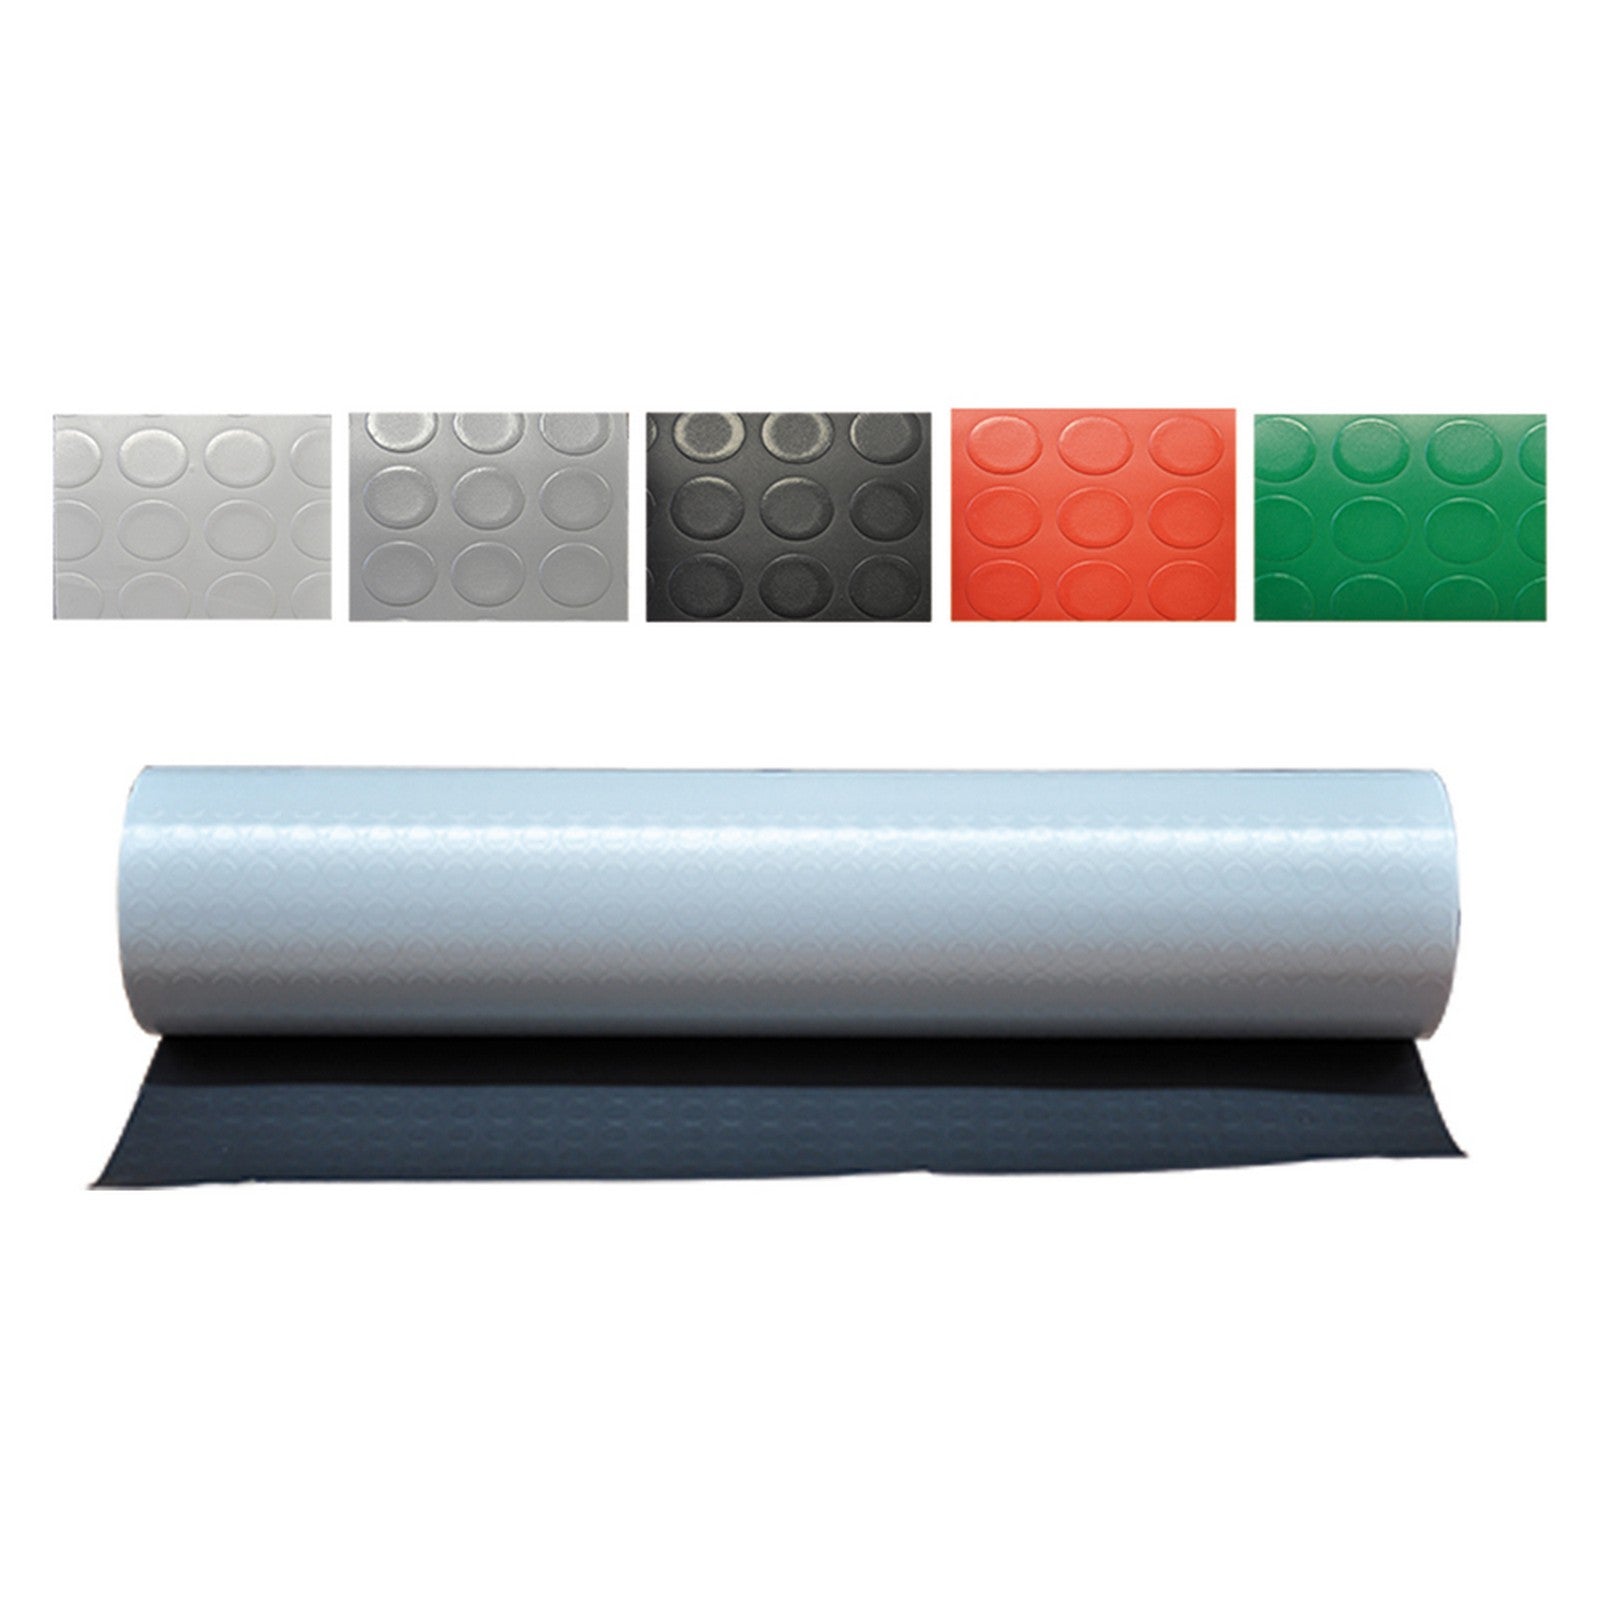 1 pz tappeto a bolle mt. 1 x 25 grigio chiaro sp. 1 mm cod:ferx.3128400nlm